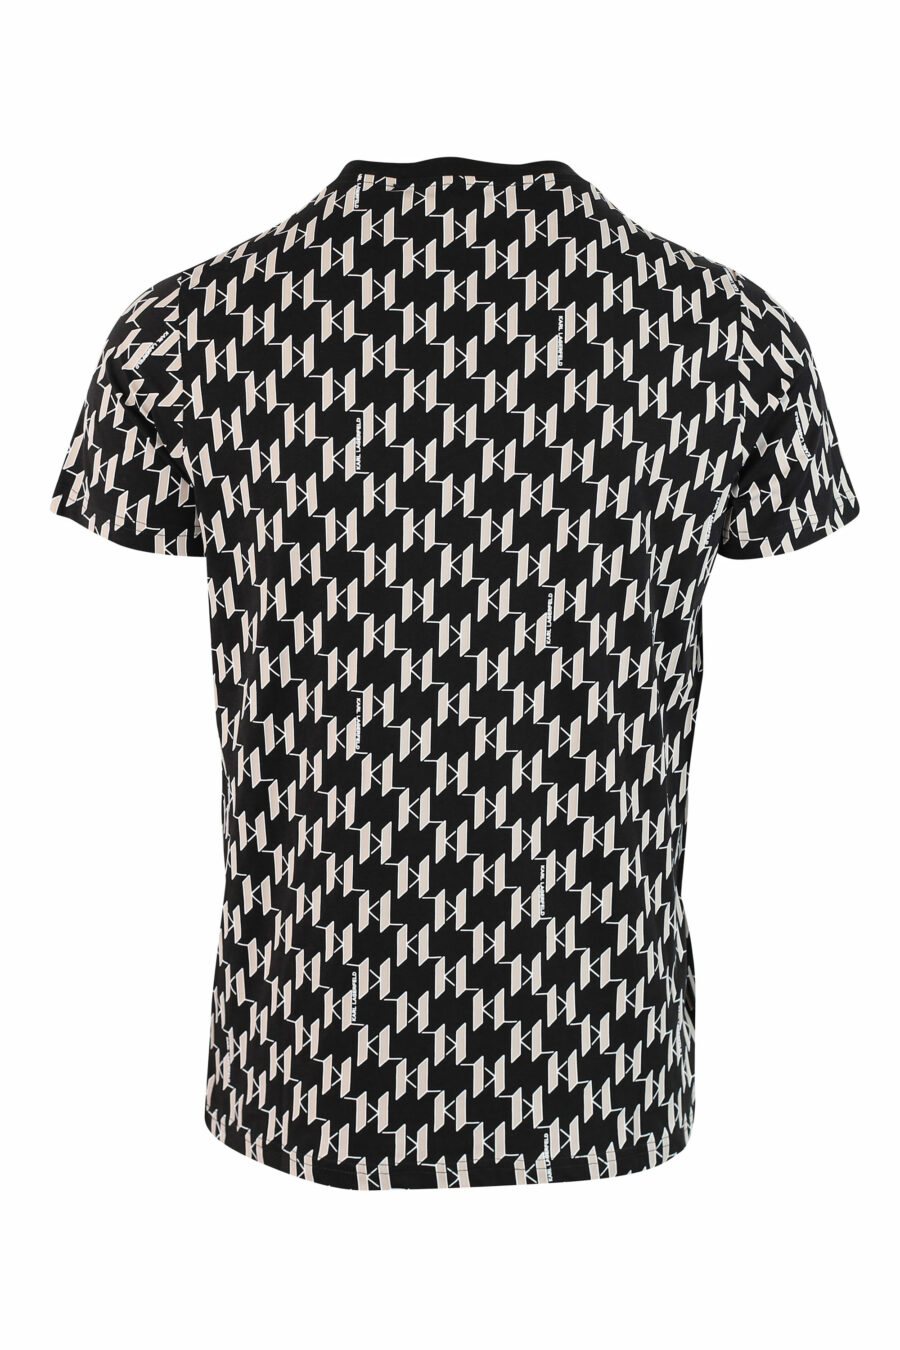 Camiseta con monograma negro y beige - IMG 9819